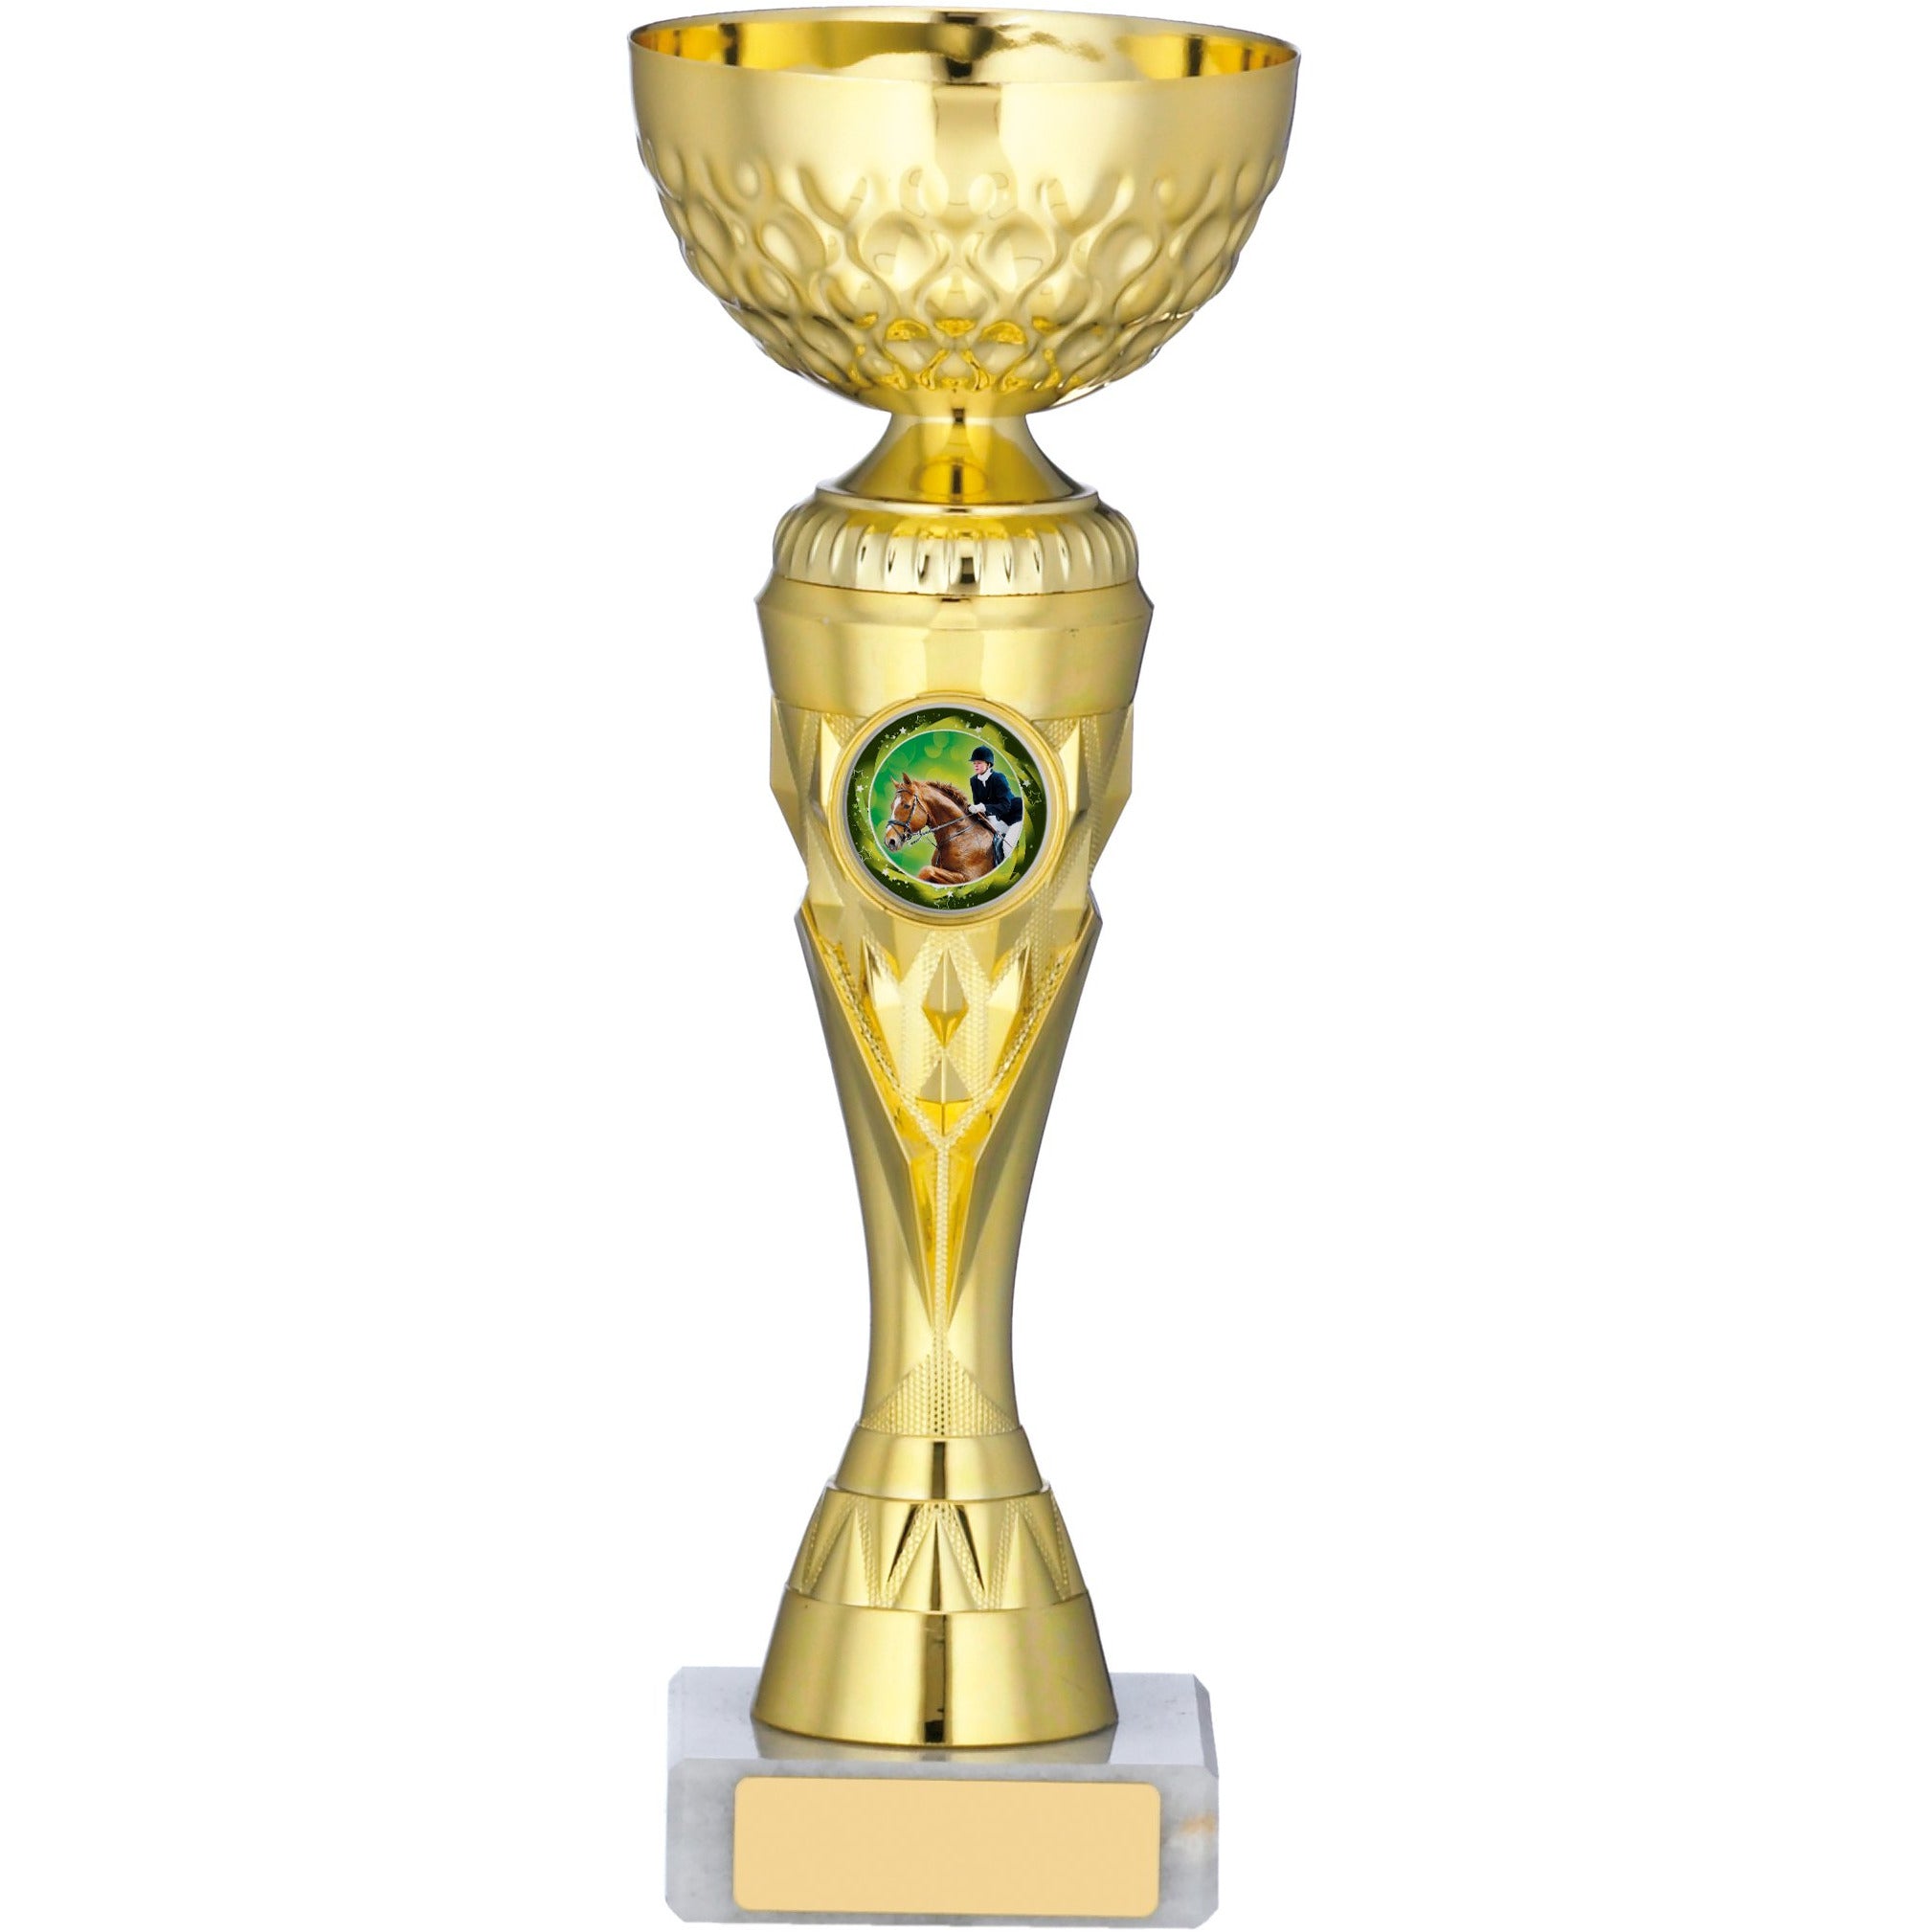 Slender Gold Trophy Cup